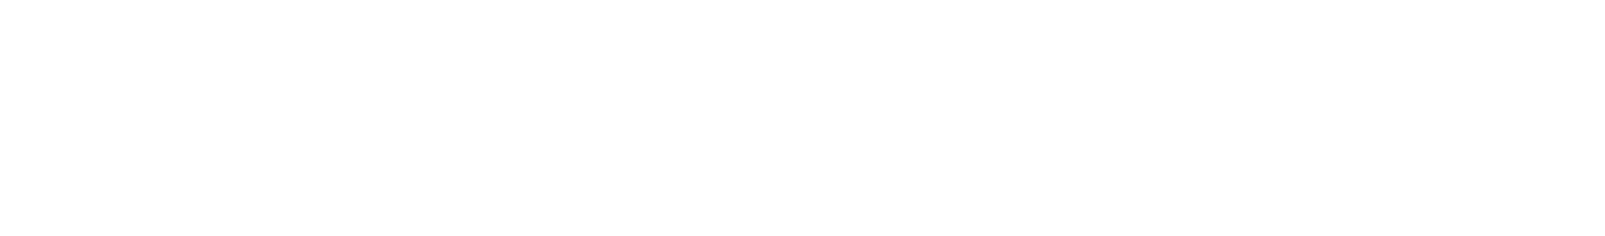 Endeavor Group Logo groß für dunkle Hintergründe (transparentes PNG)